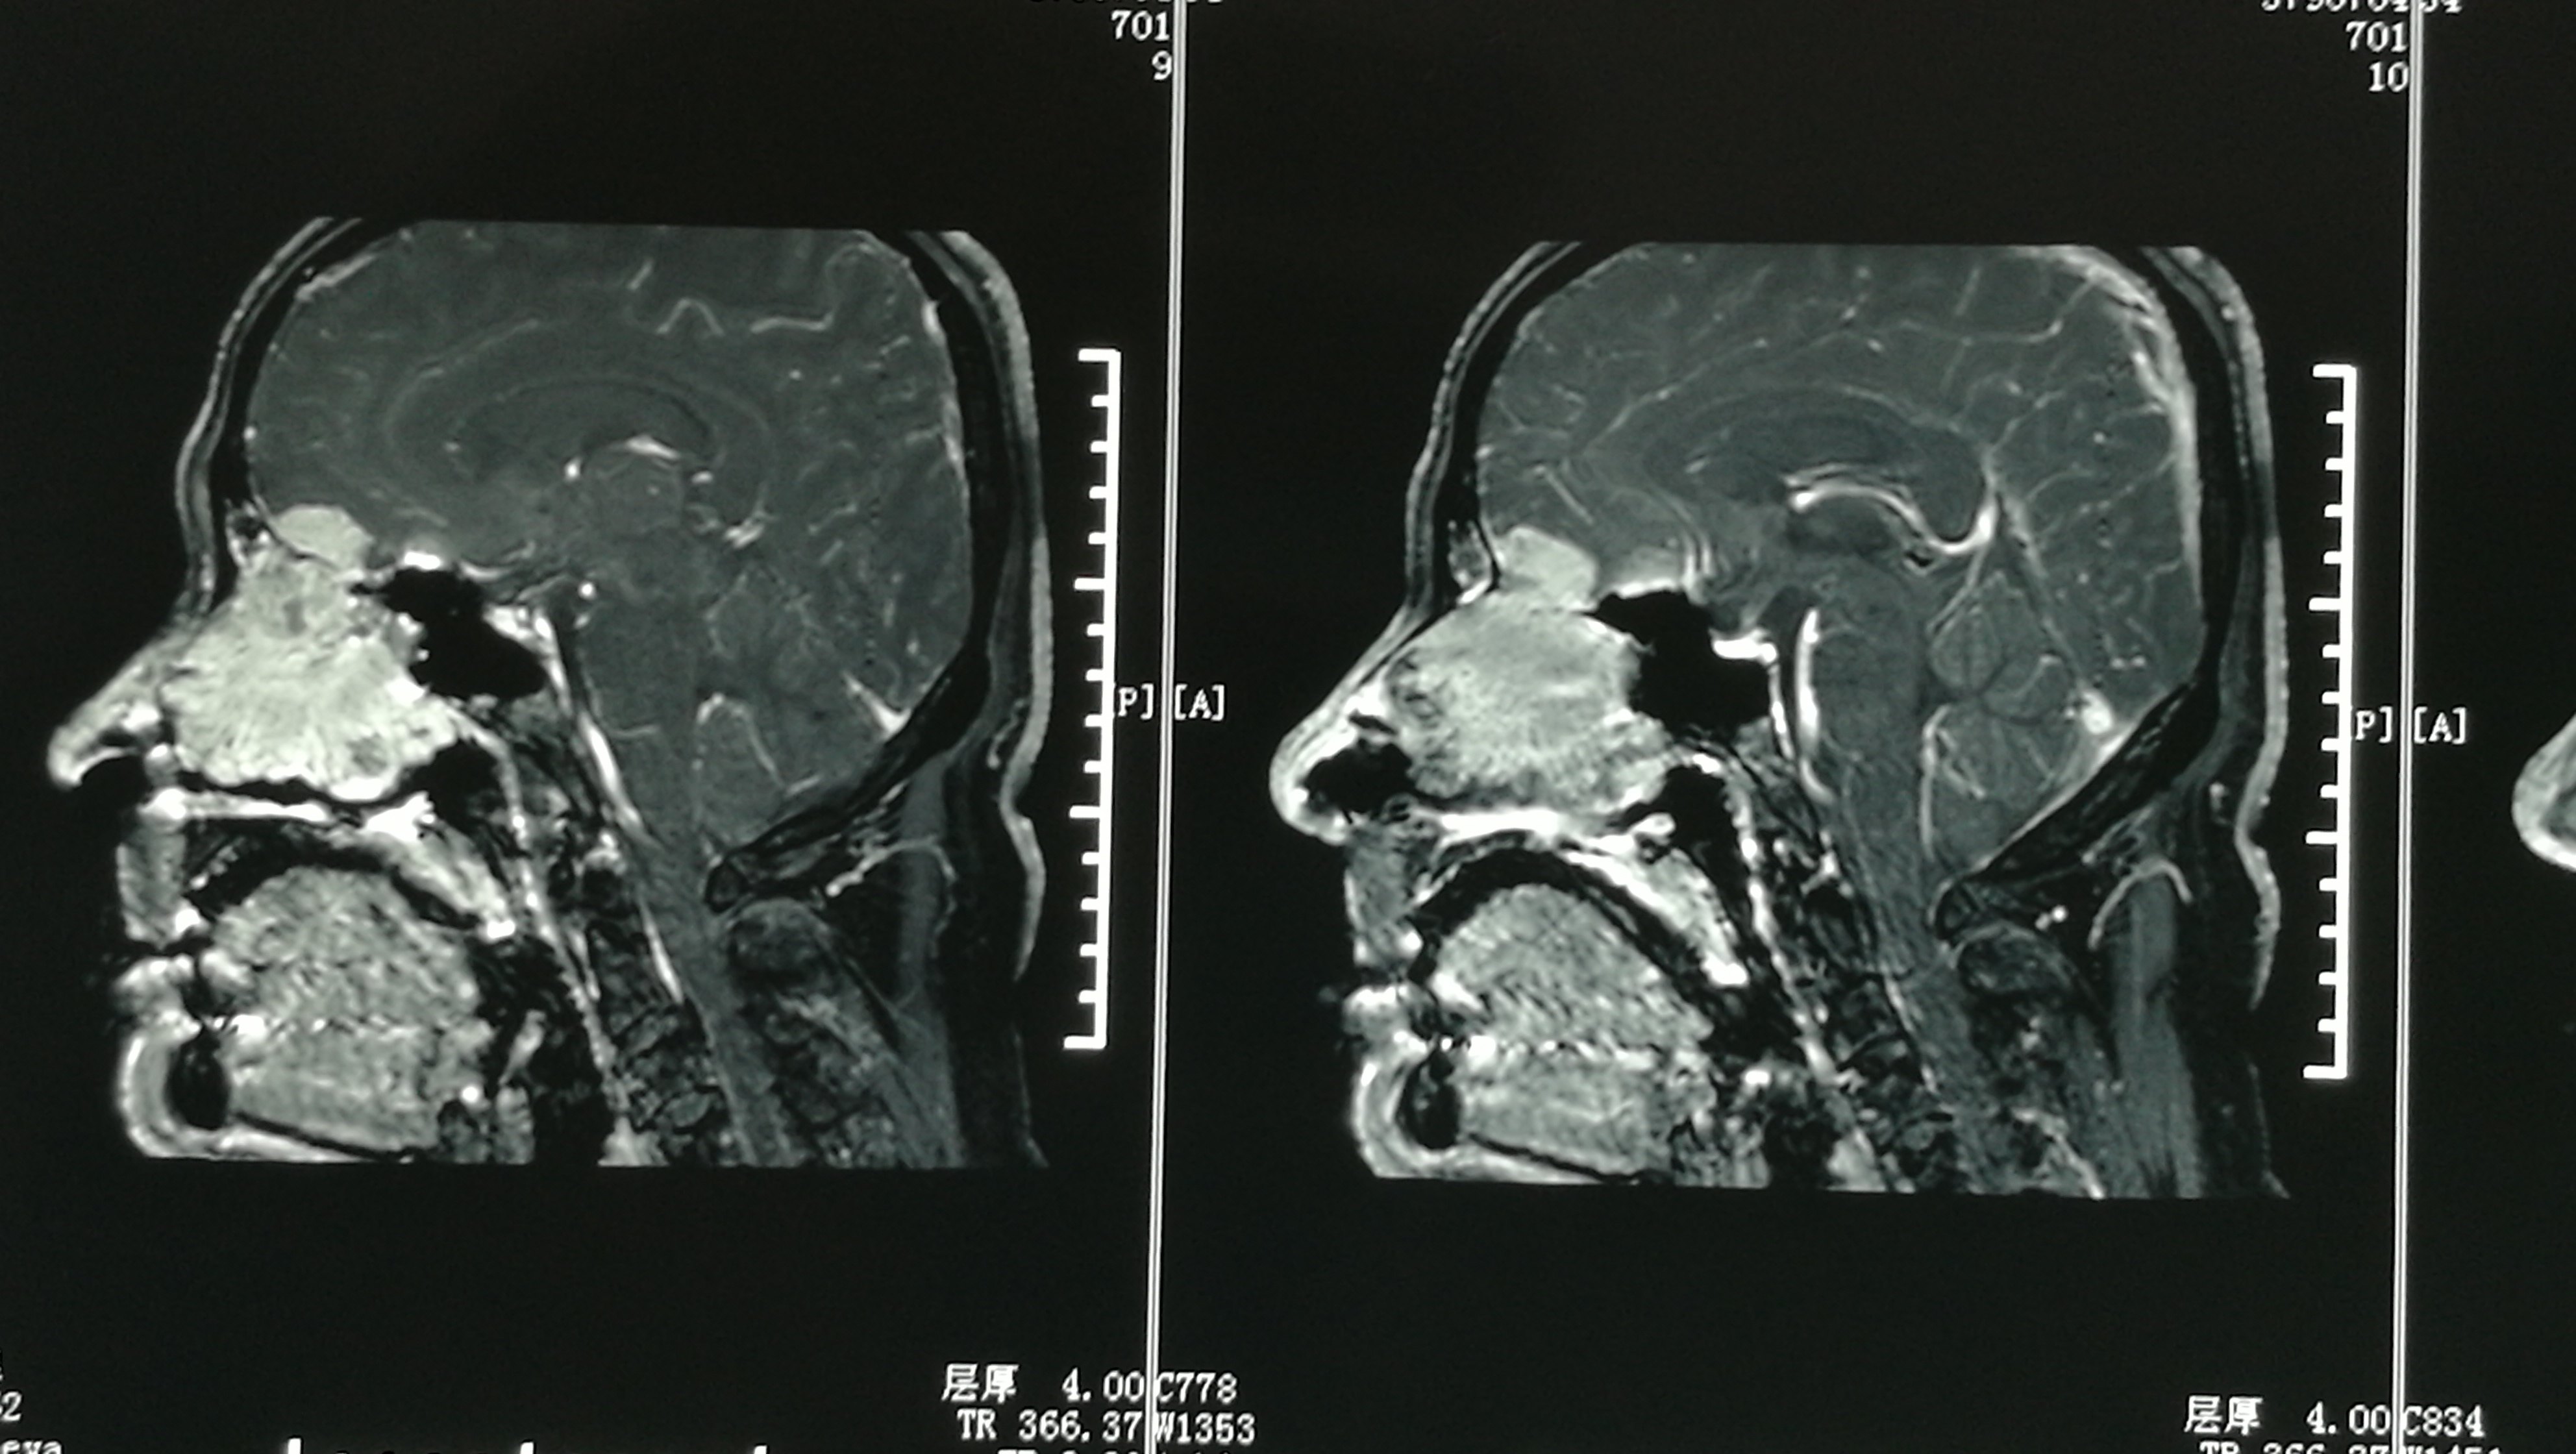 髓母细胞瘤的影像学特征 | The Neurosurgical Atlas全文翻译 - 脑医汇 - 神外资讯 - 神介资讯